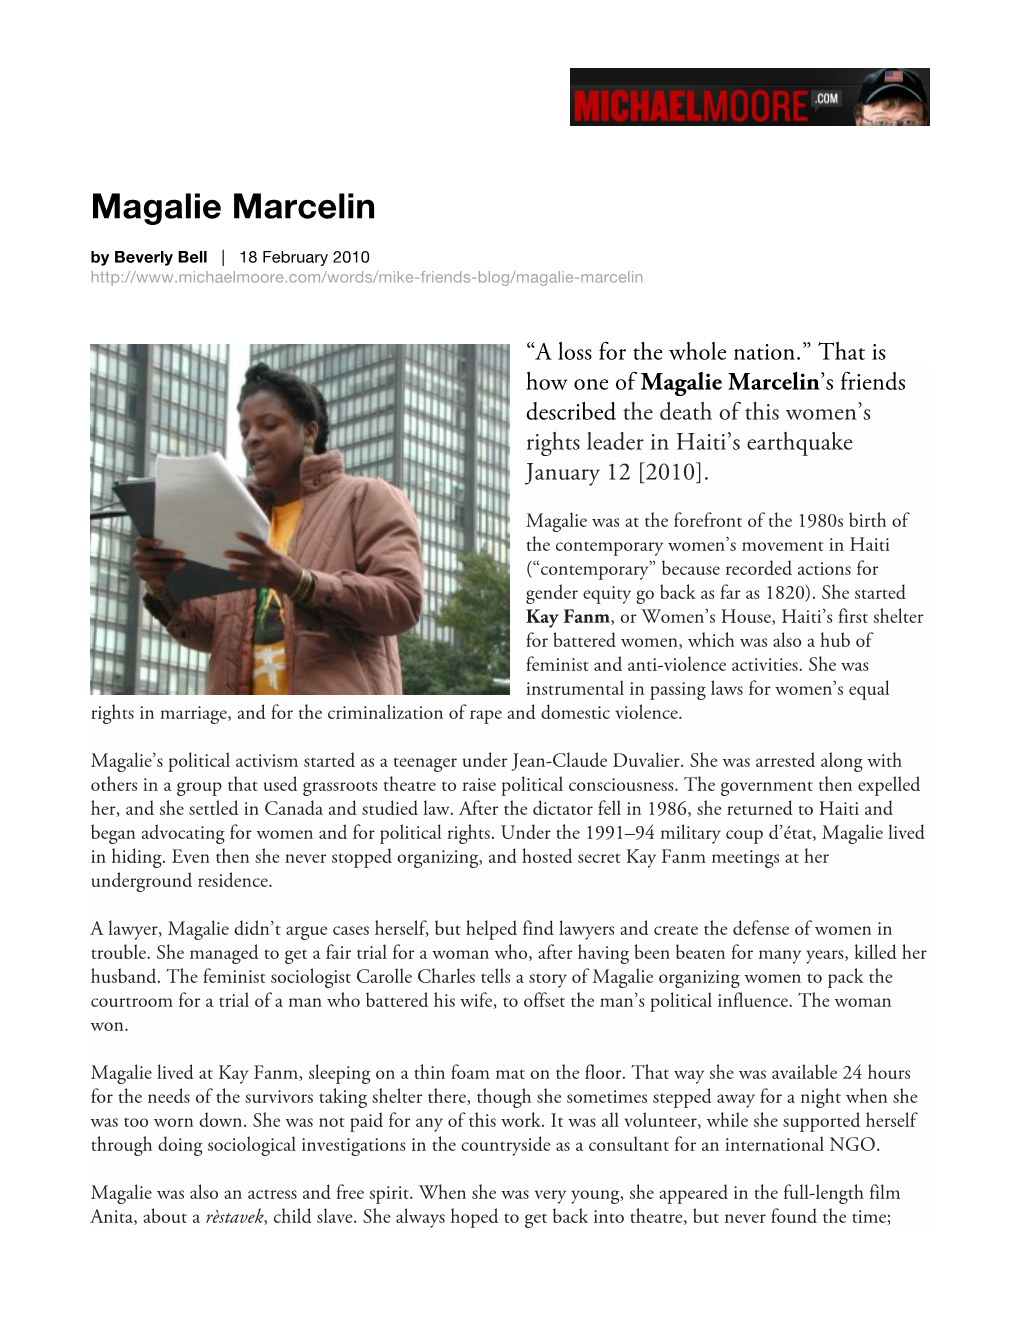 Magalie Marcelin Obituary